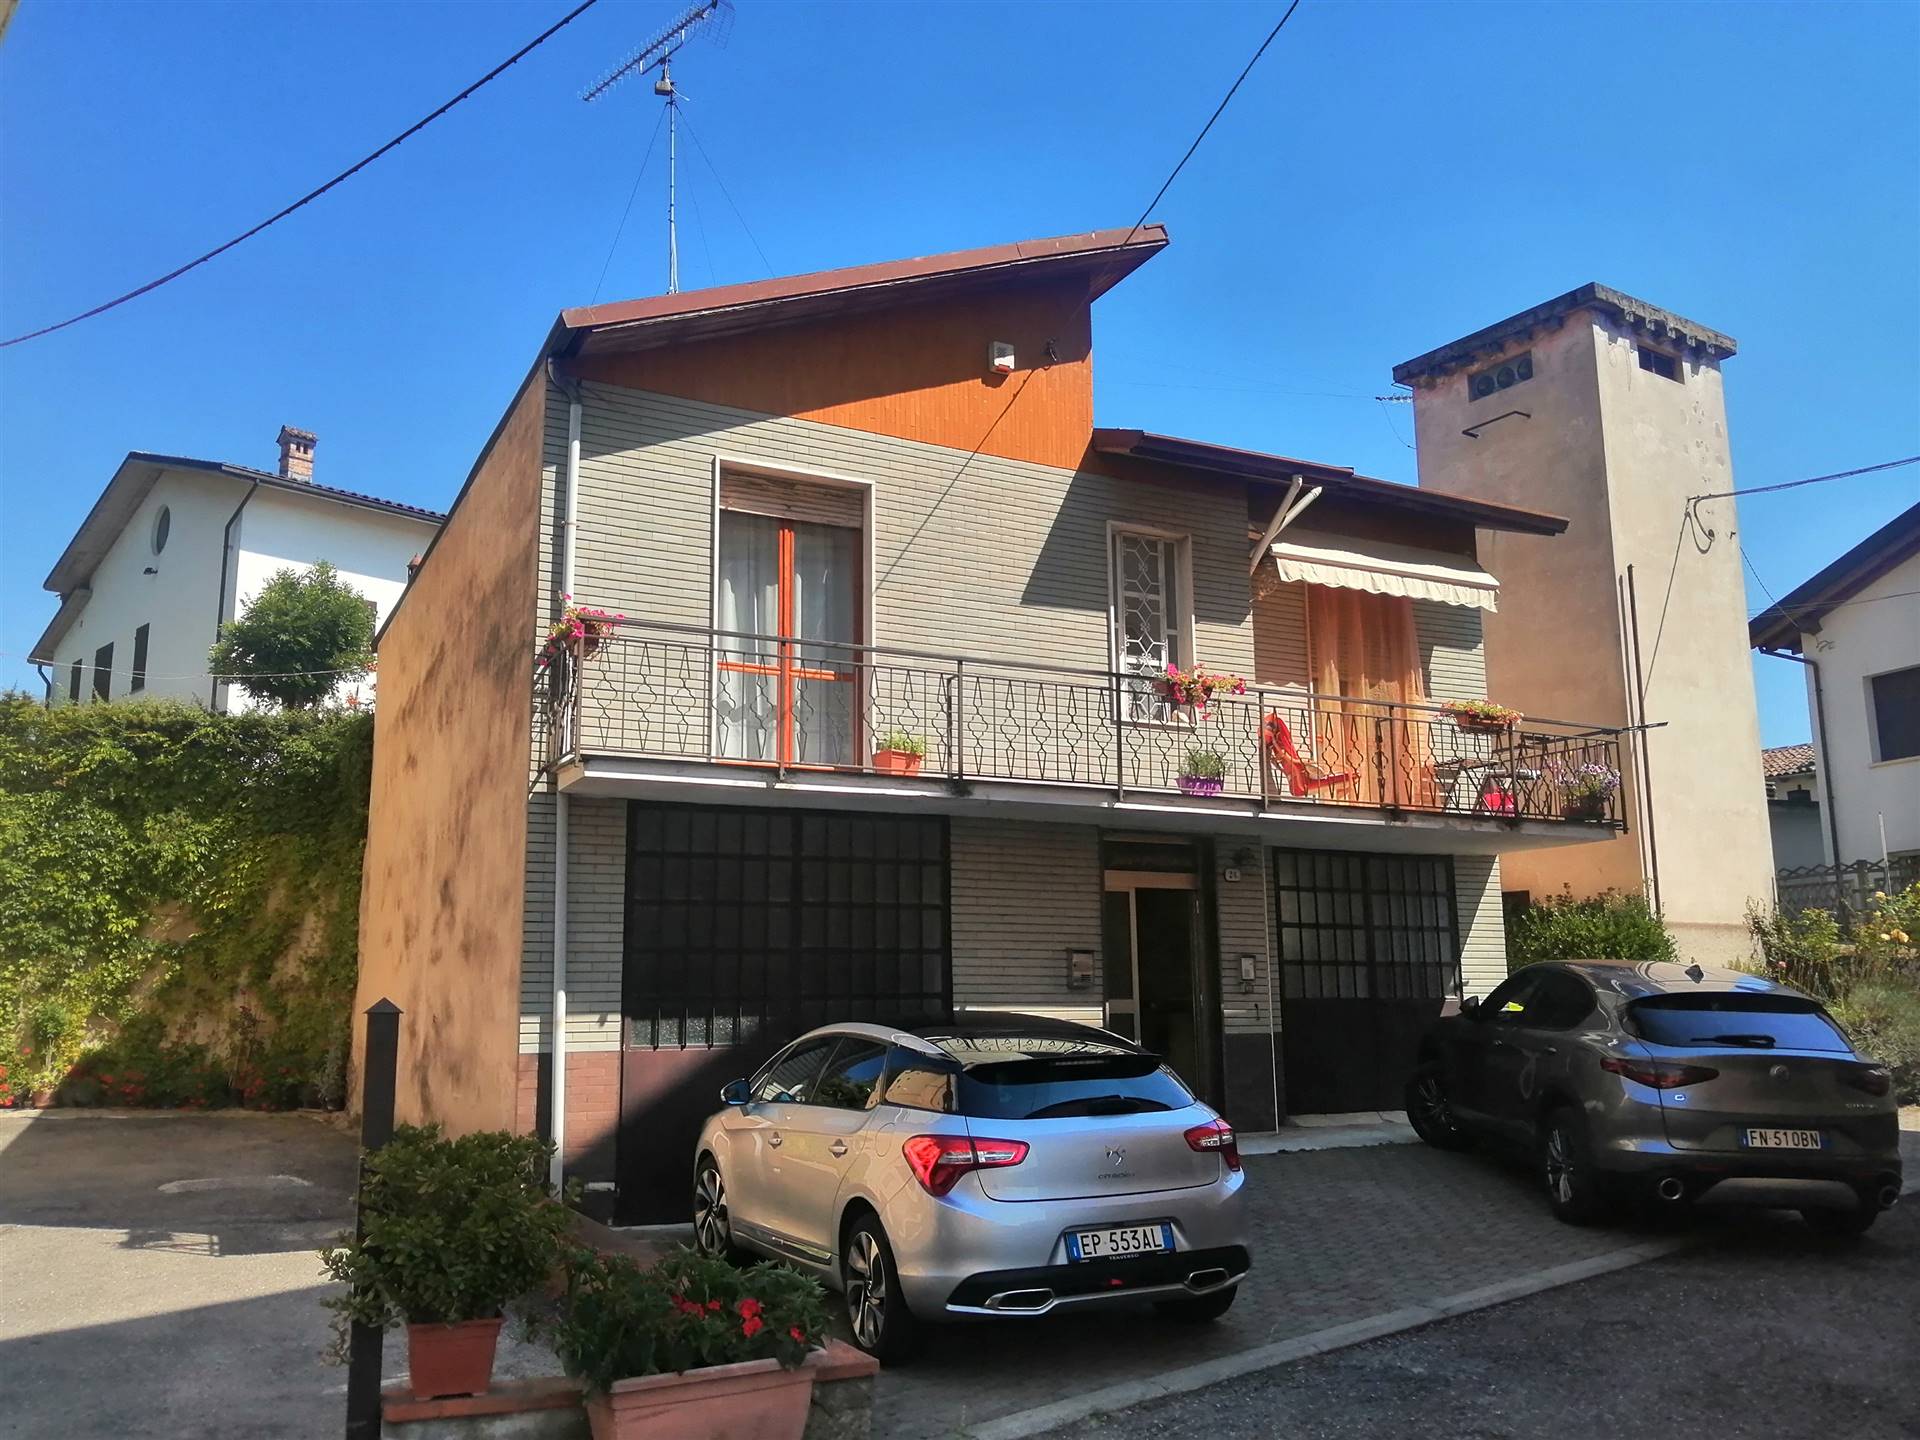 Villa in vendita a Cassano Spinola, 5 locali, prezzo € 99.000 | PortaleAgenzieImmobiliari.it